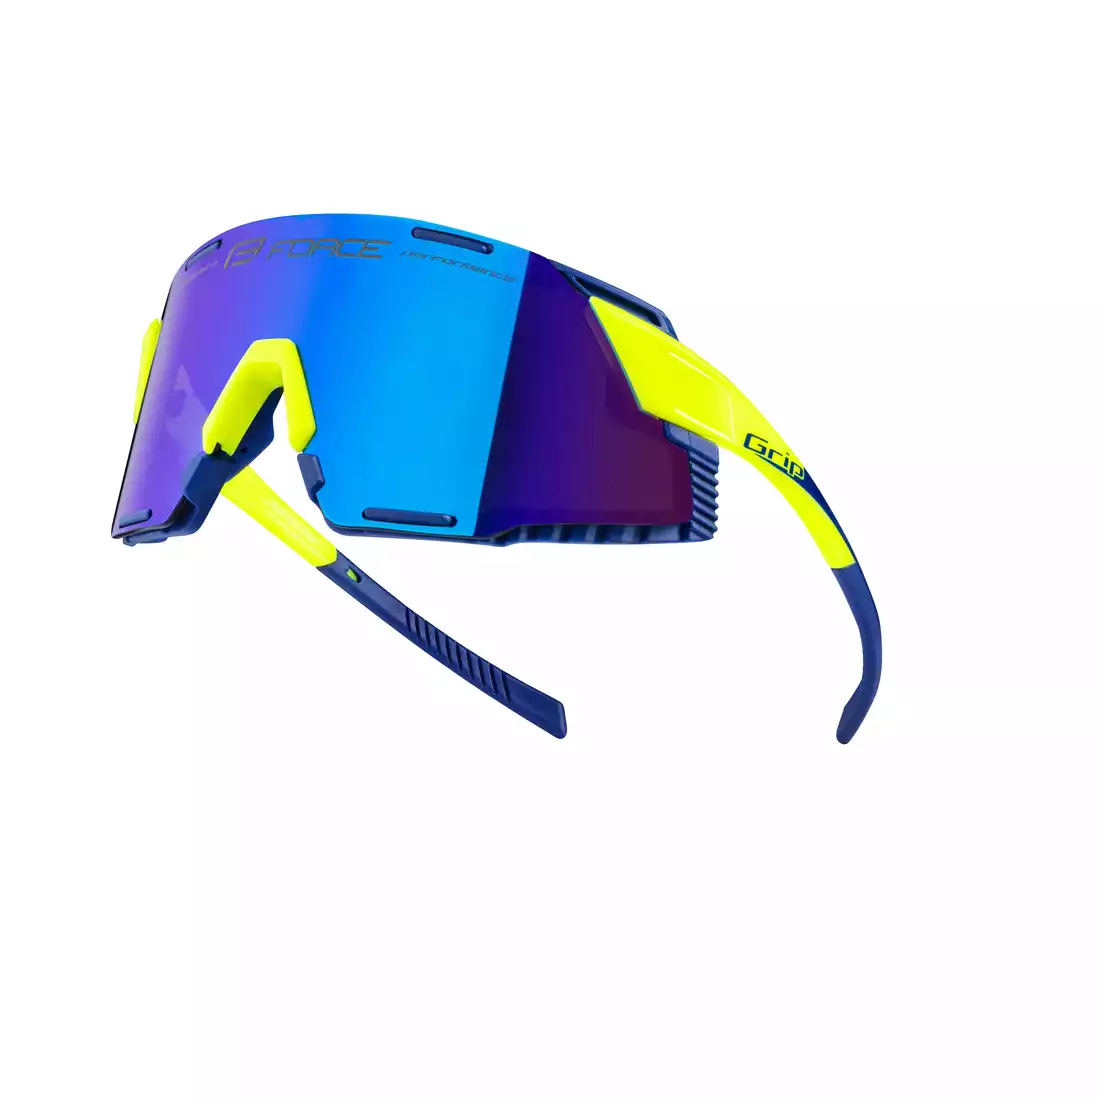 FORCE GRIP Sports glasses, blue REVO lenses, fluo 